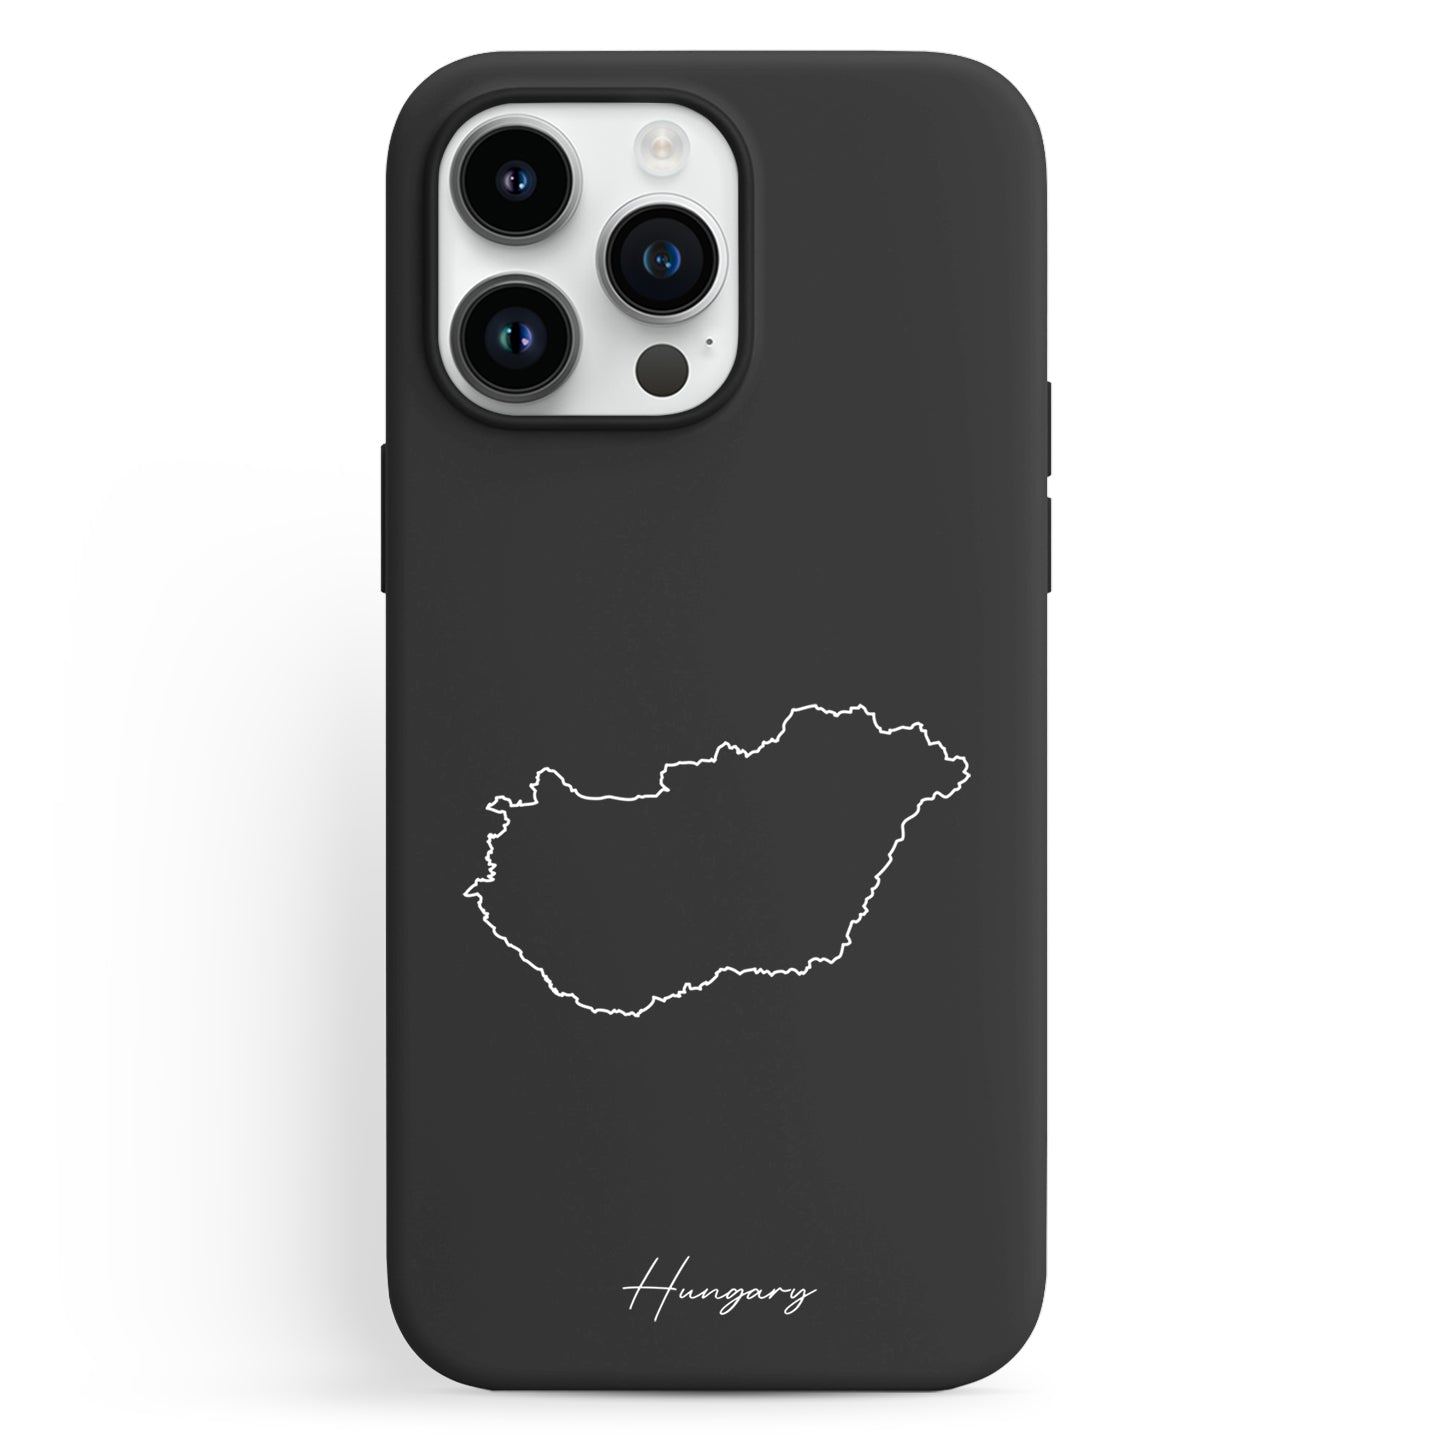 Handyhüllen mit Landkarte - Ungarn - 1instaphone